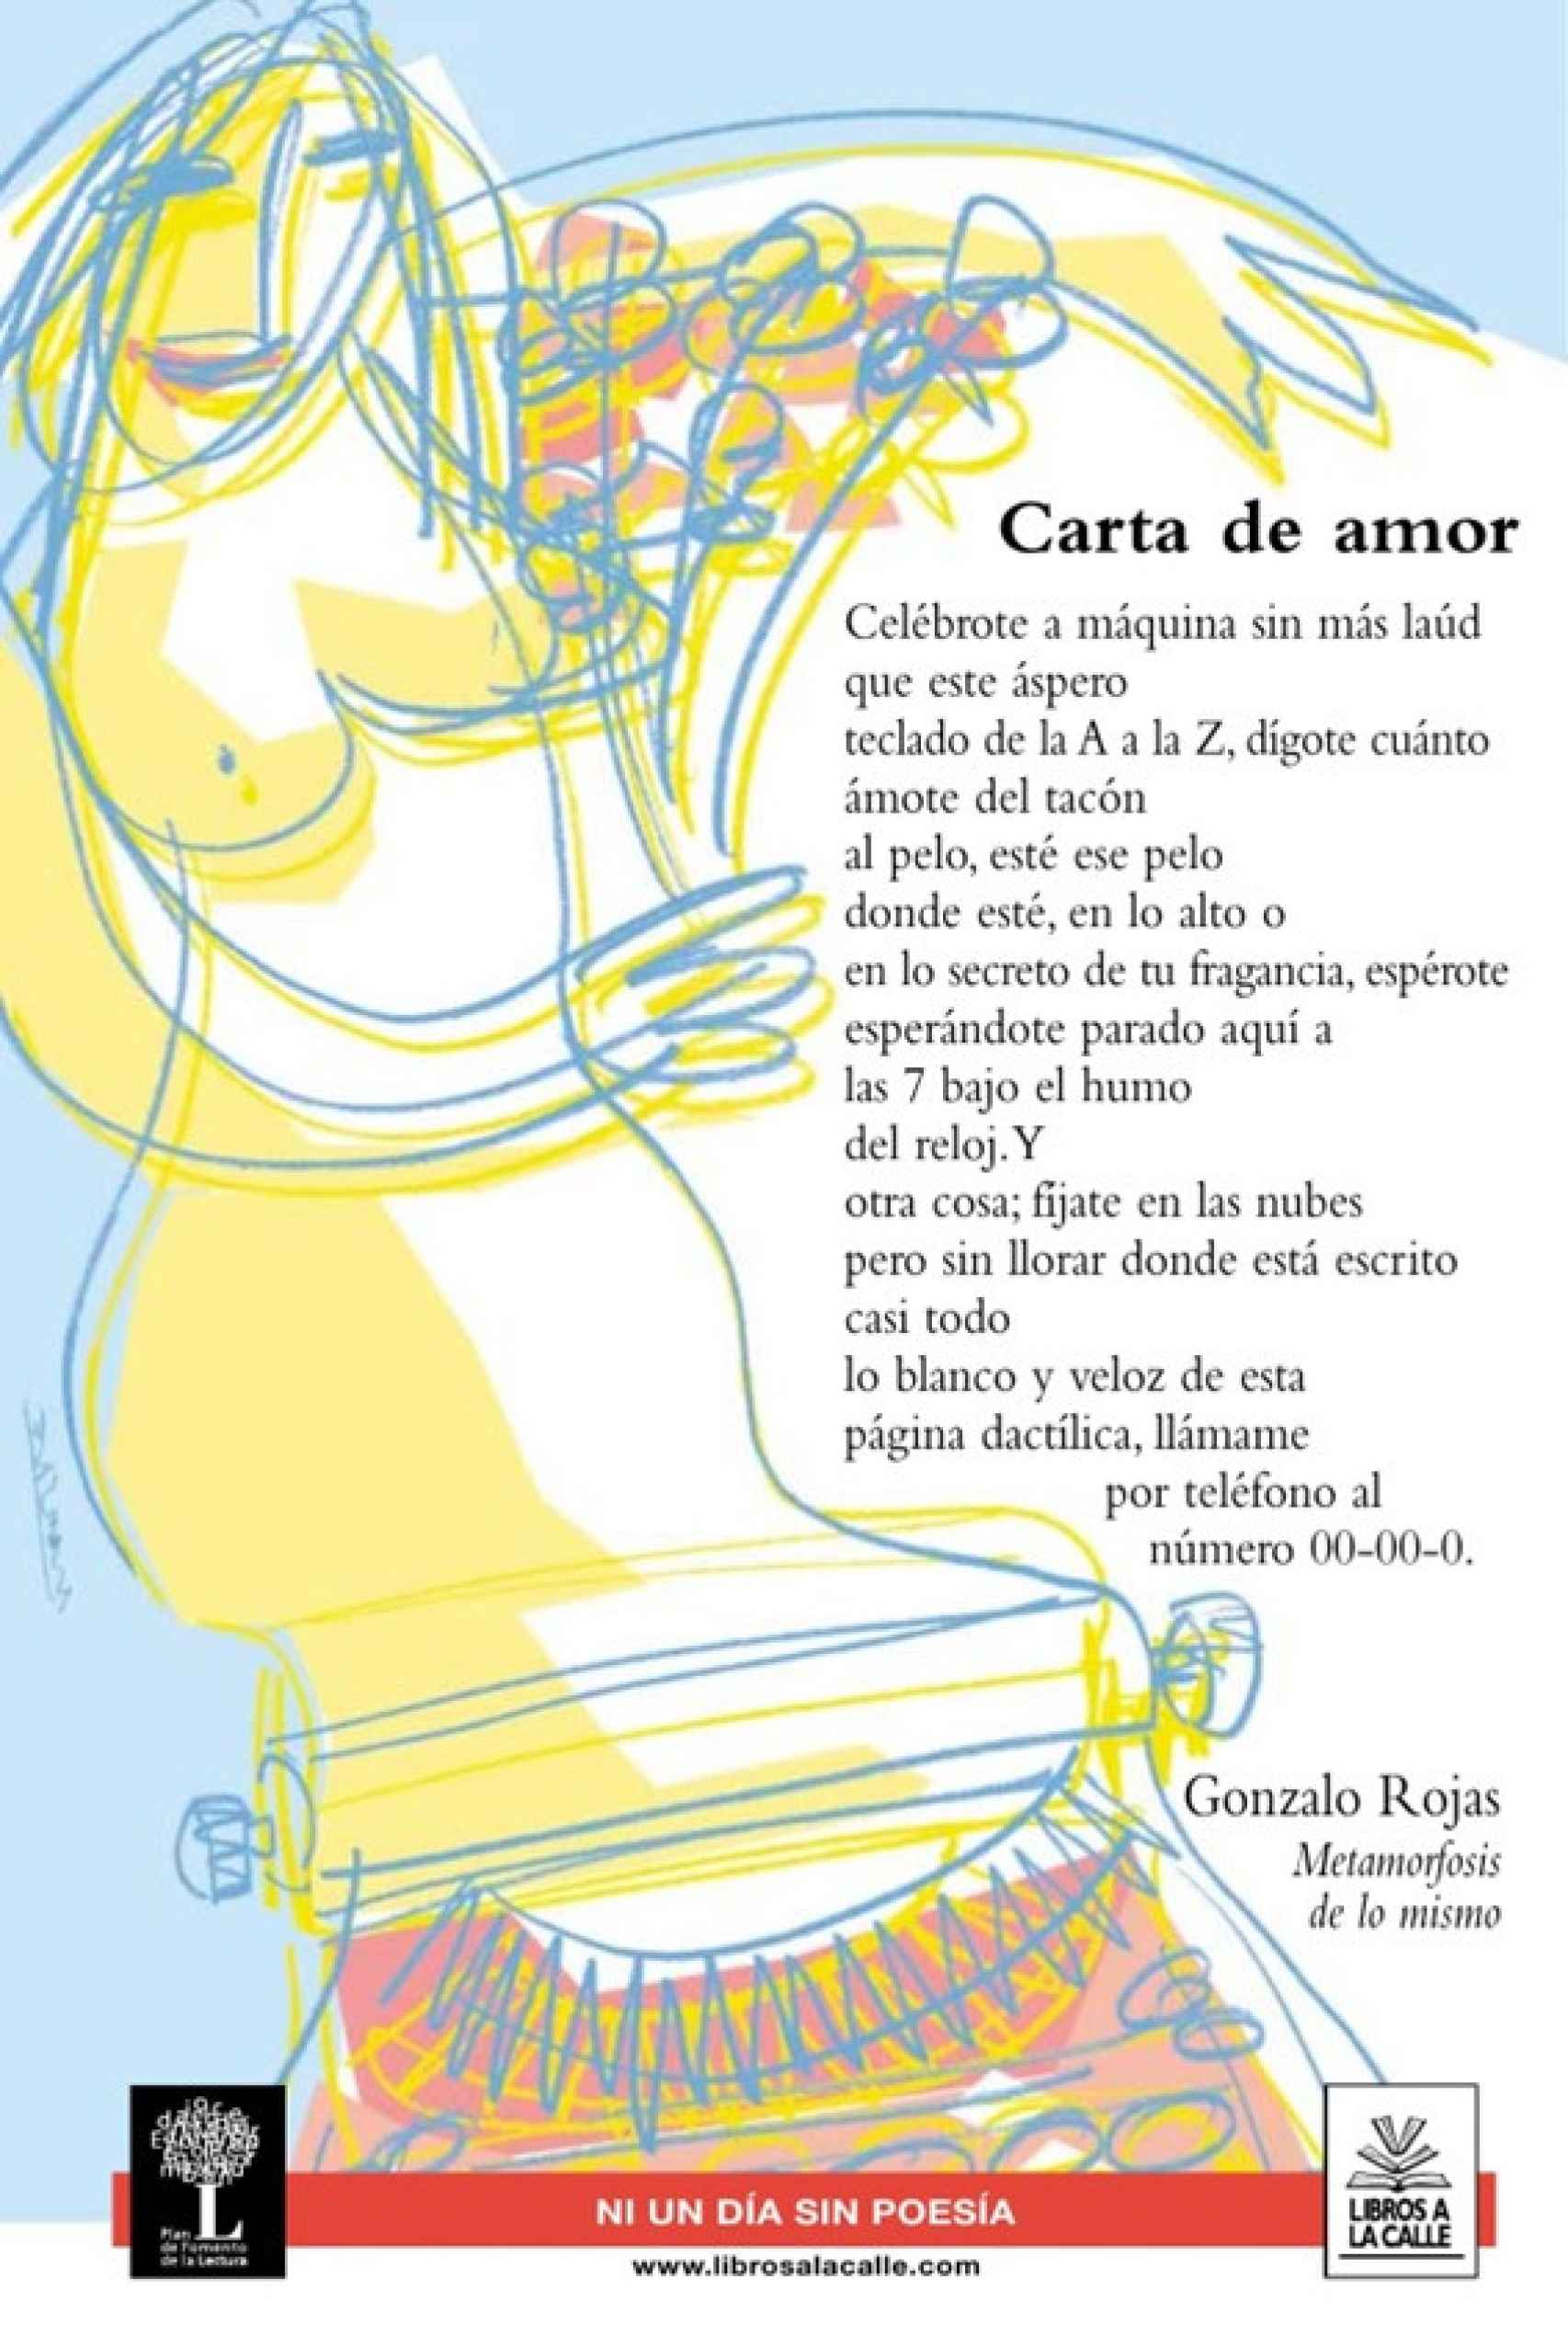 Poema de Gonzalo Rojas incluido en la campaña Libros a la calle, impulsada por la Comunidad de Madrid